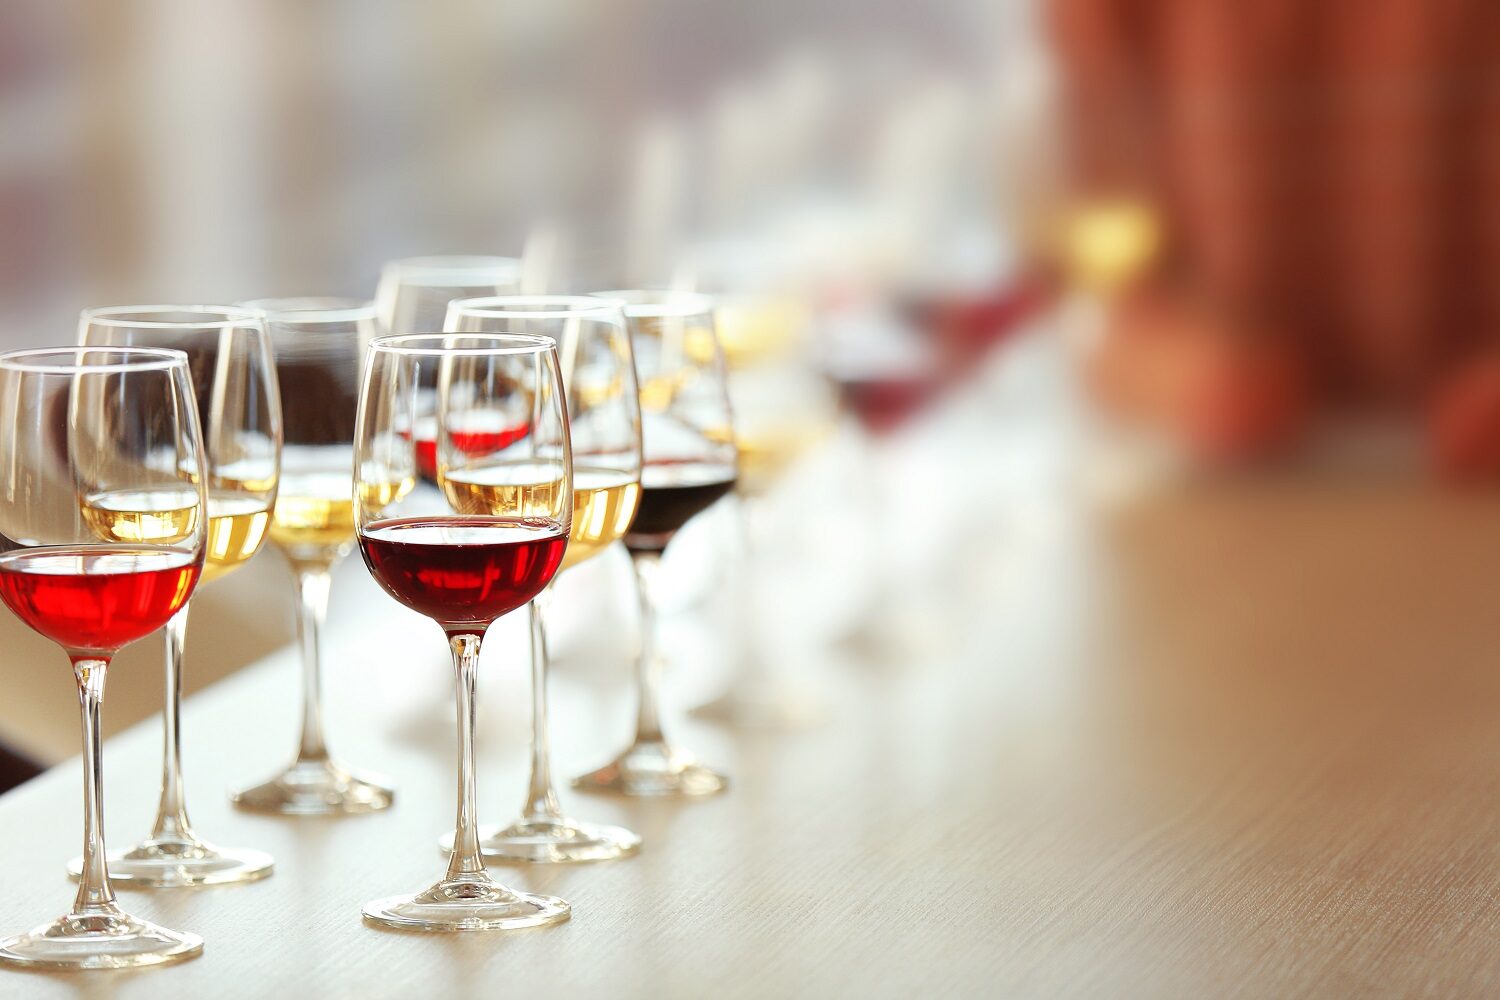 Mai multe pahare cu diferite tipuri de vin, alb si rosu, asezate in sir pe o masă